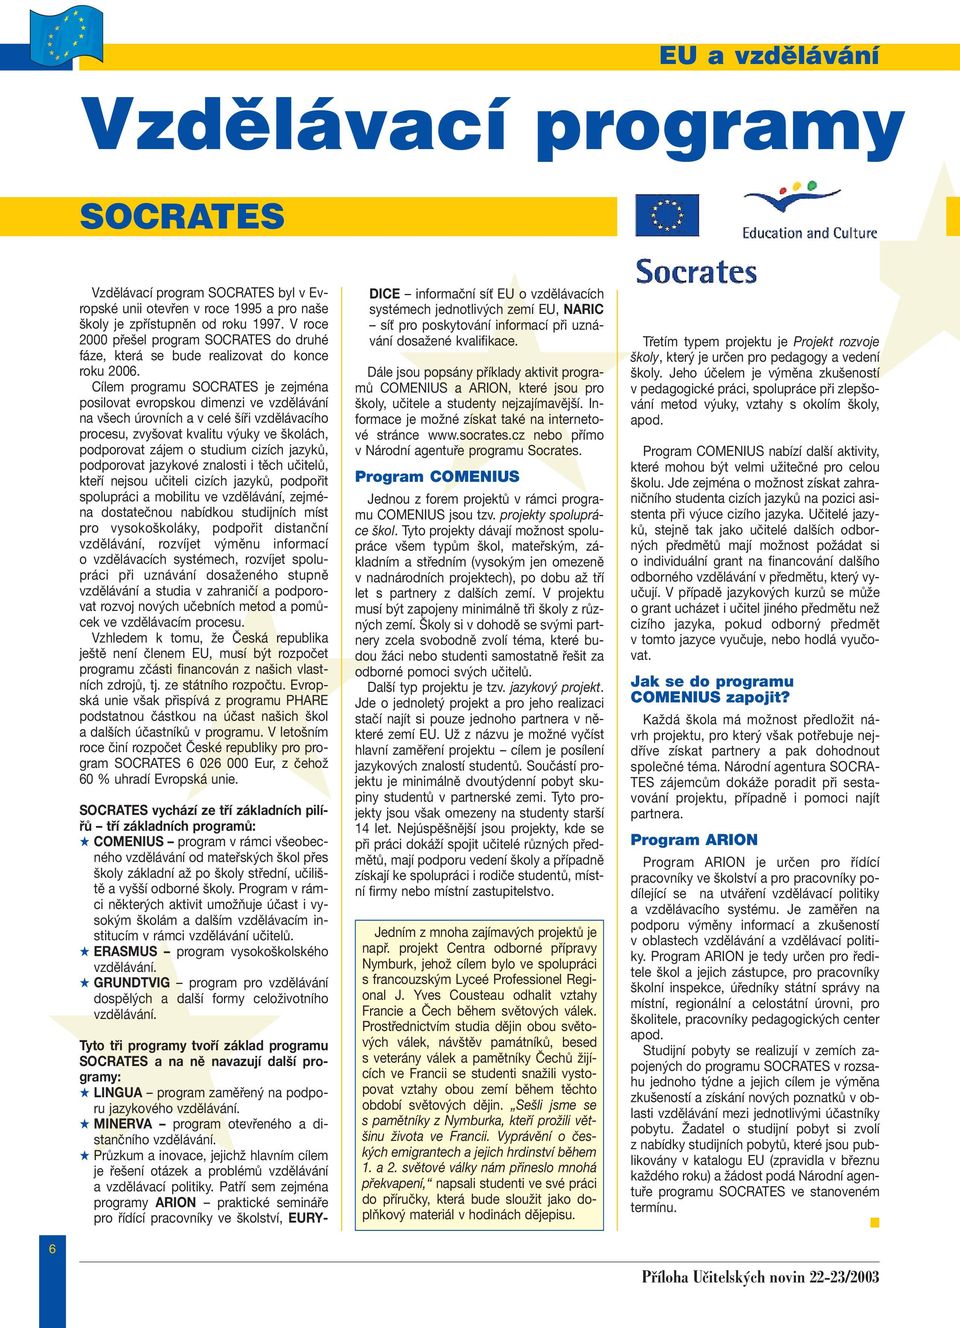 Cílem programu SOCRATES je zejména posilovat evropskou dimenzi ve vzdělávání na všech úrovních a v celé šíři vzdělávacího procesu, zvyšovat kvalitu výuky ve školách, podporovat zájem o studium cizích